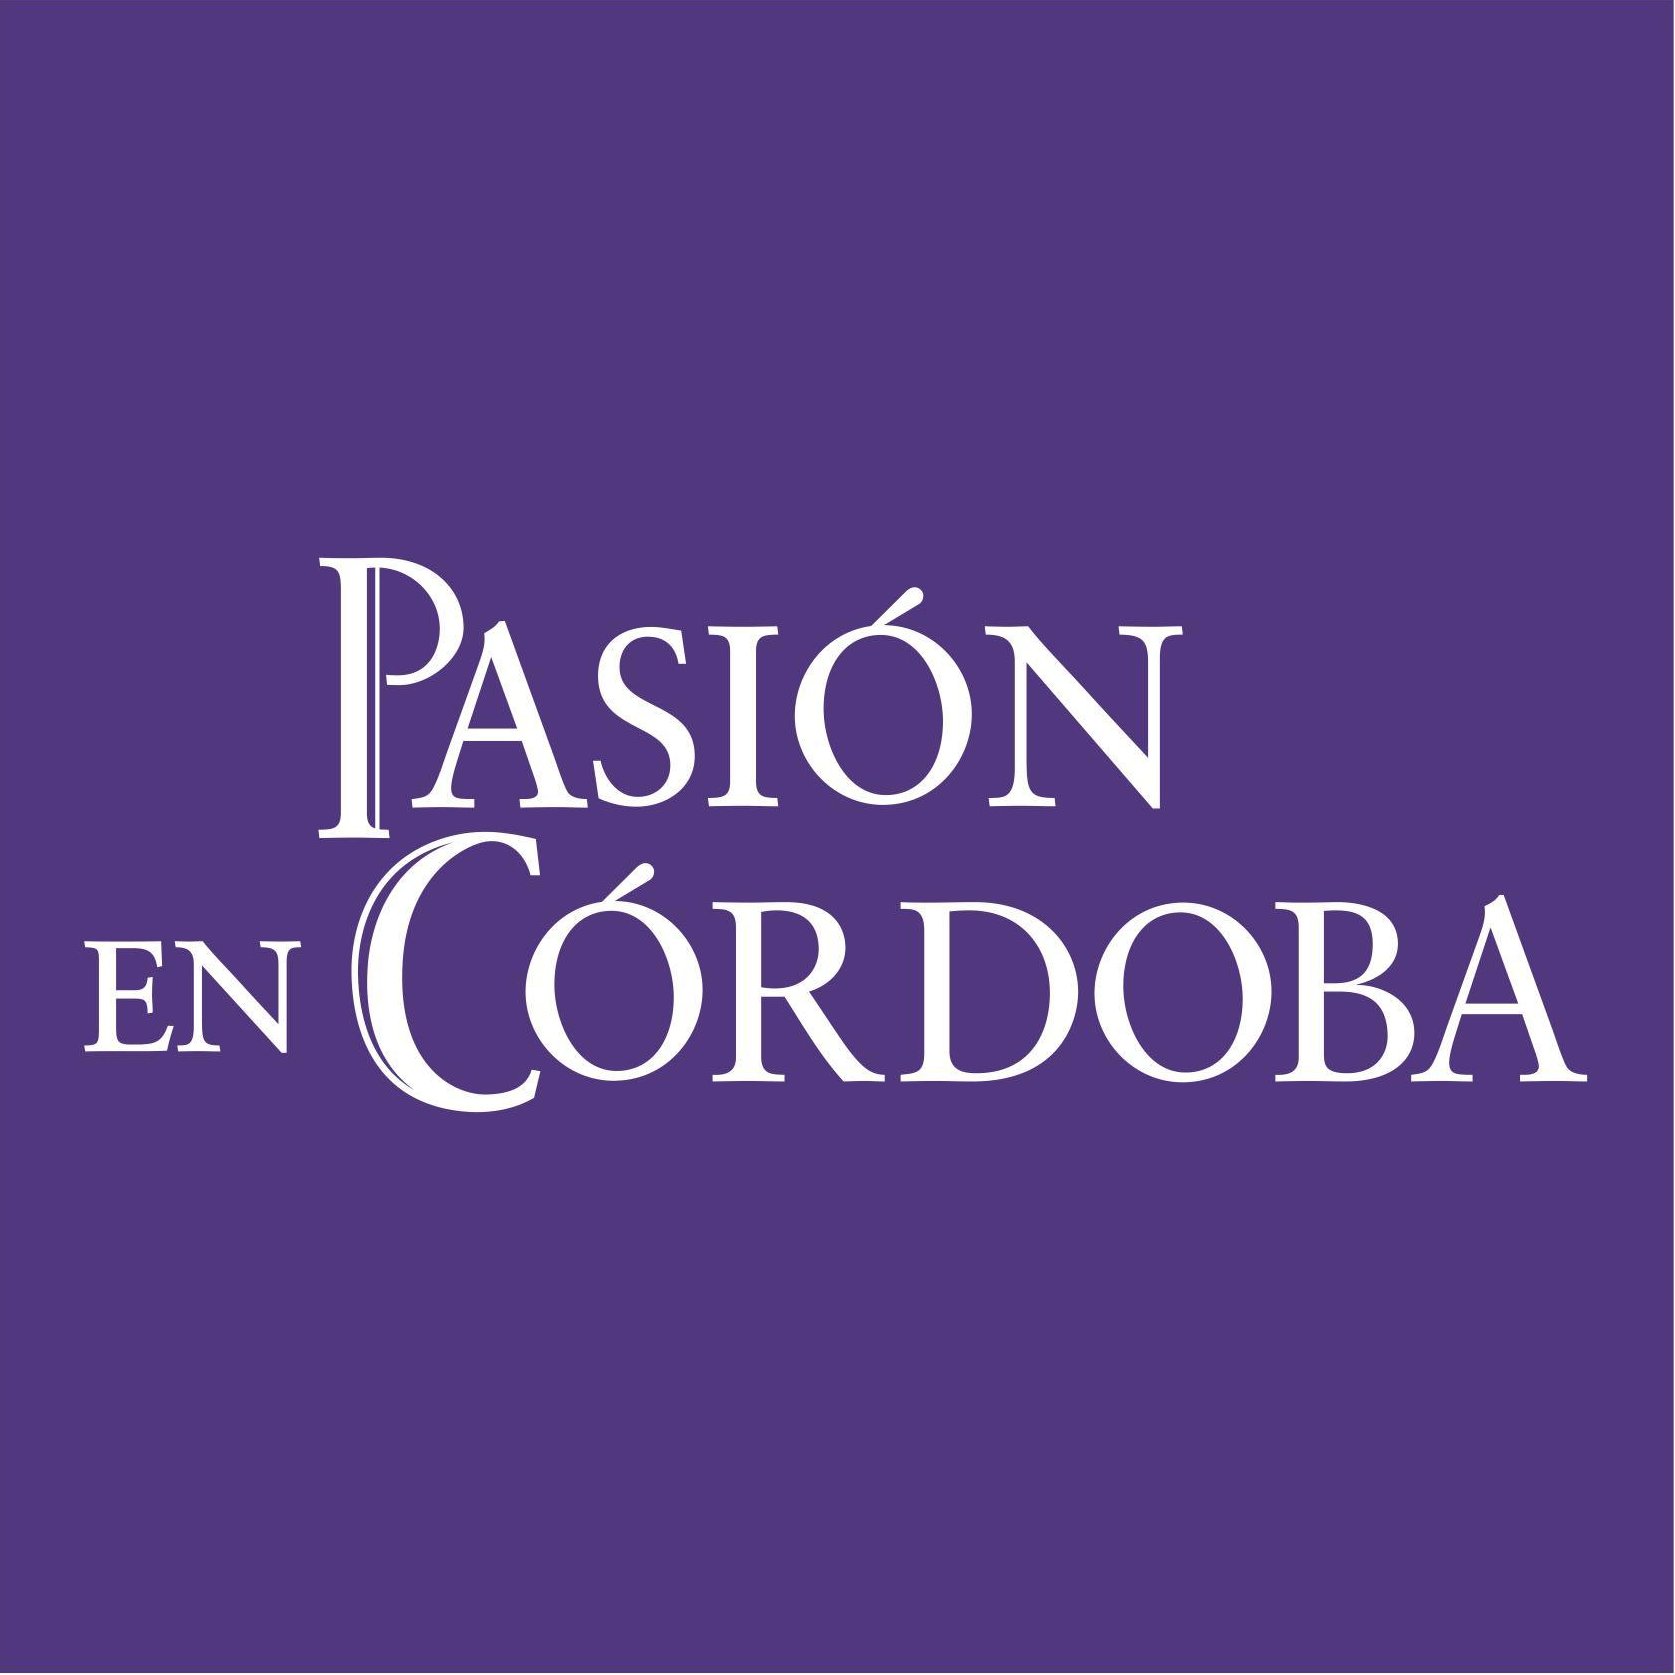 Información de la #SemanaSanta de #CórdobaEsp y sus cofradías. 

También en:
📷: https://t.co/2yJRglz4TX 
👩‍💻: https://t.co/NsiVQh1rEF